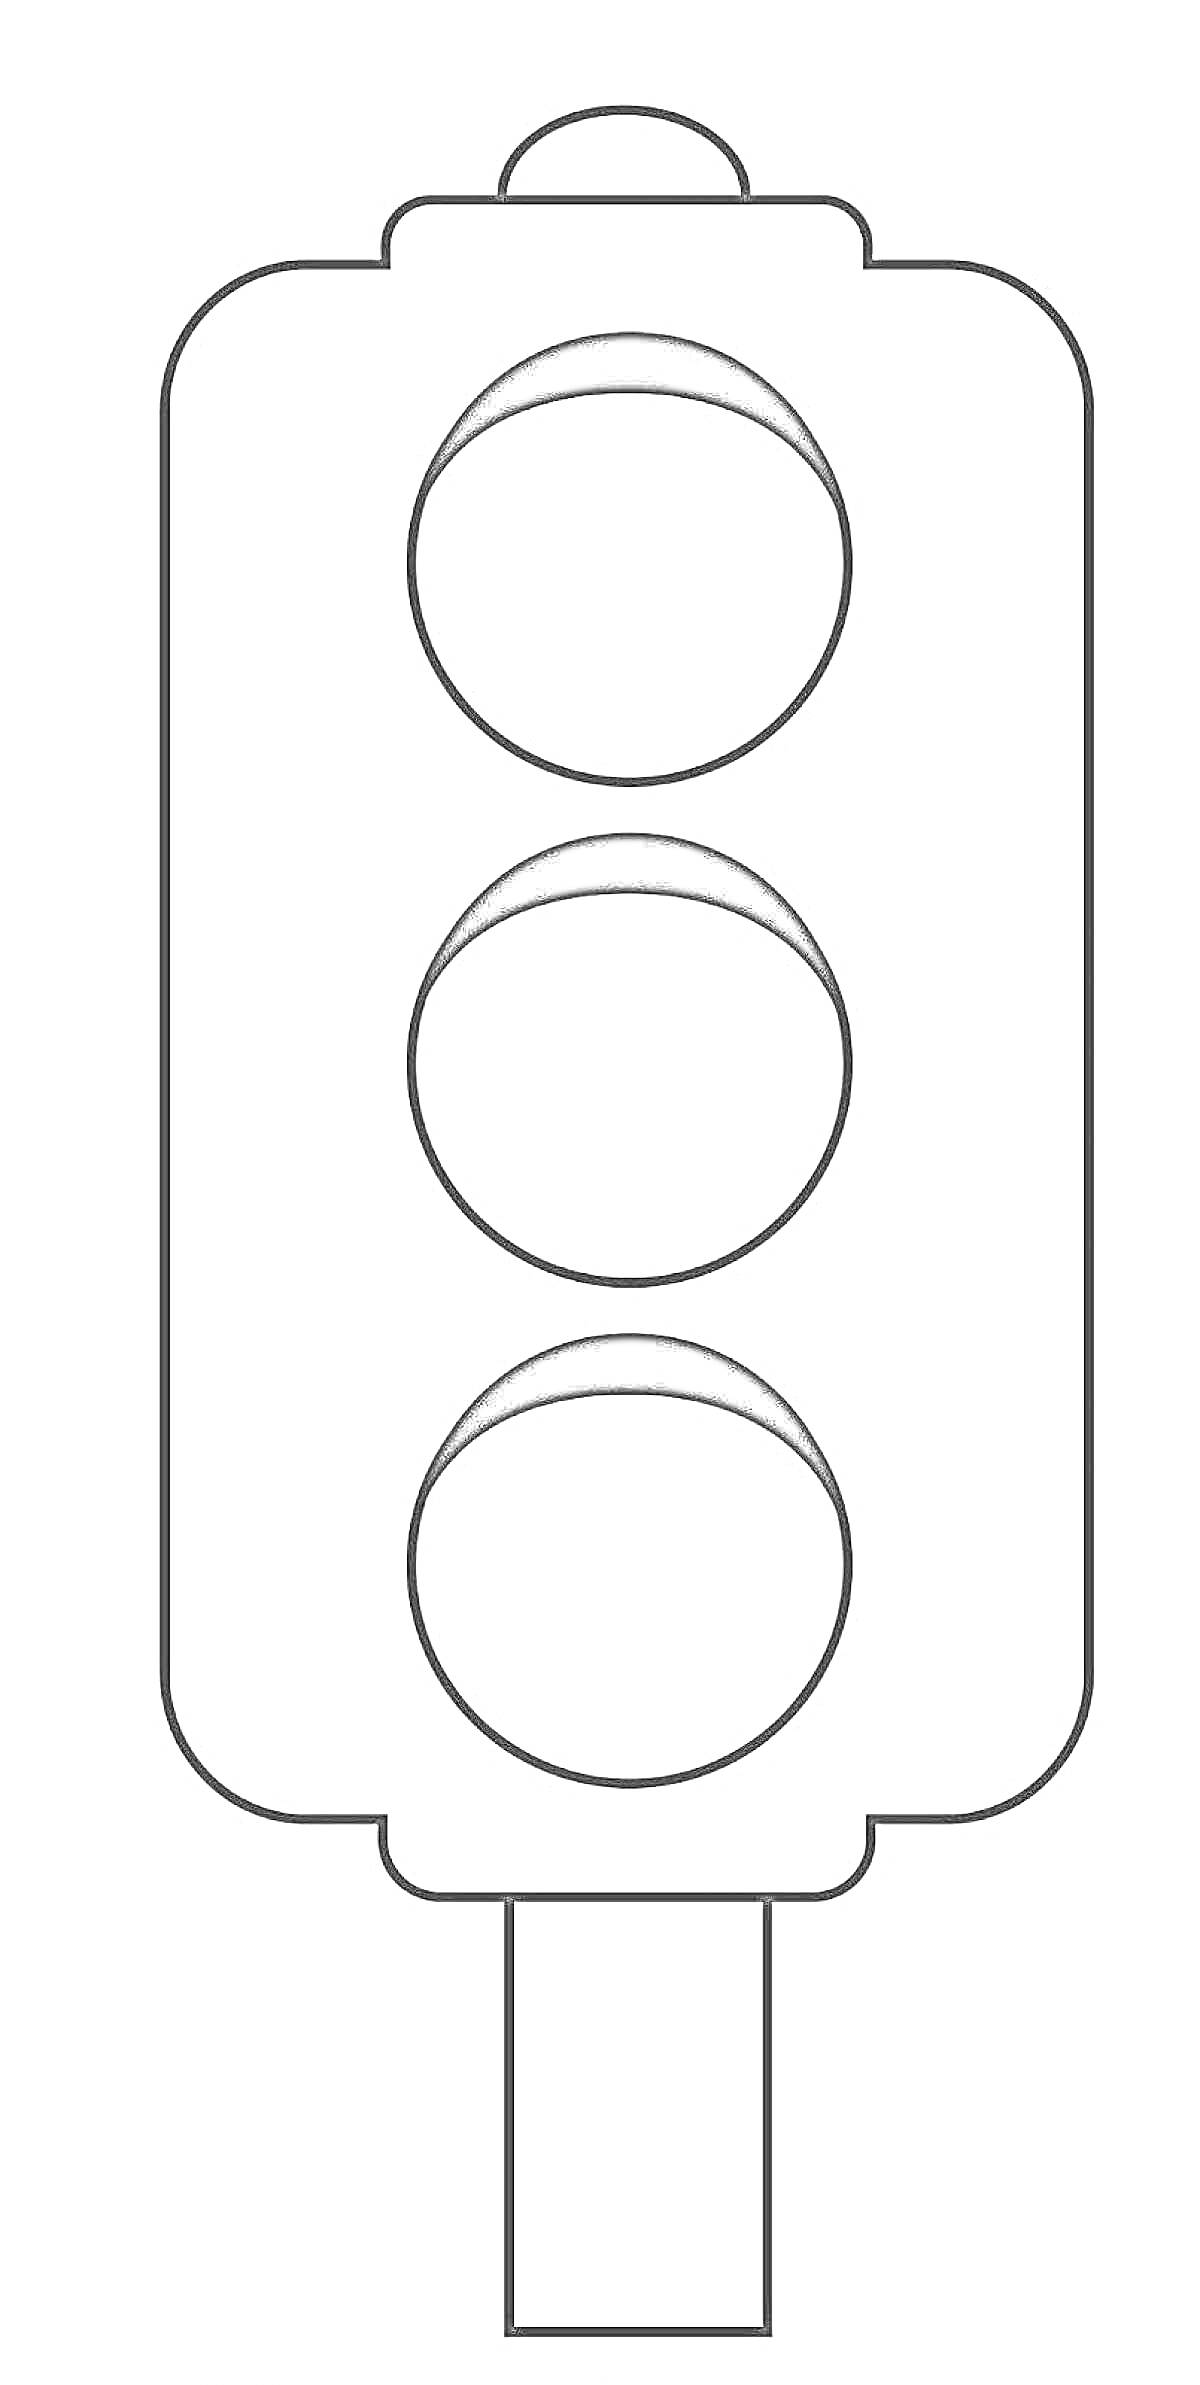 Светофор с тремя кругами и стойкой для детей